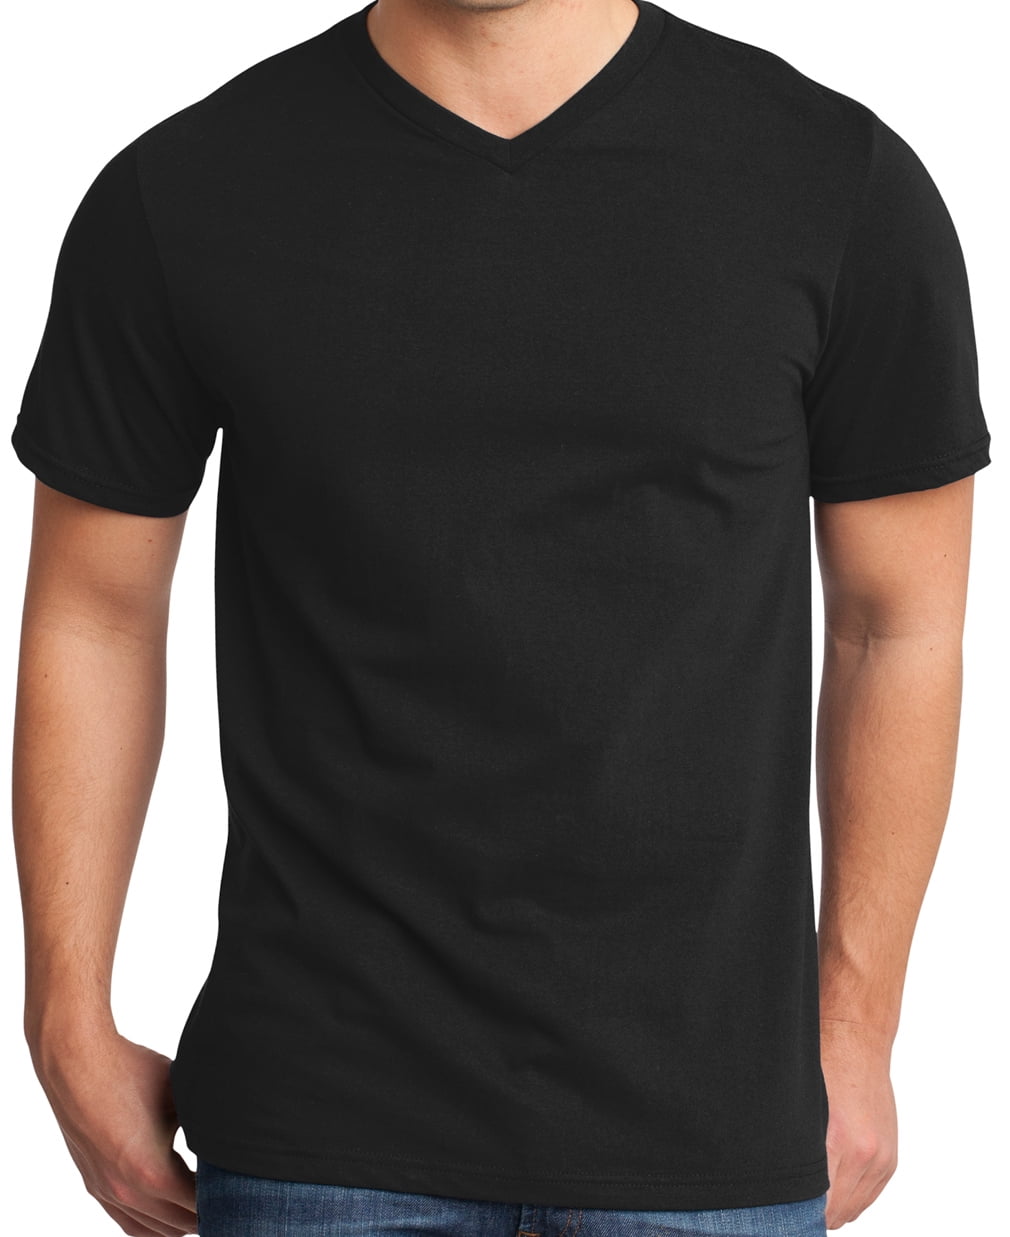 Buy Cool Shirts - Mens Lightweight 100% Cotton V-neck Tee Shirt, Black ...